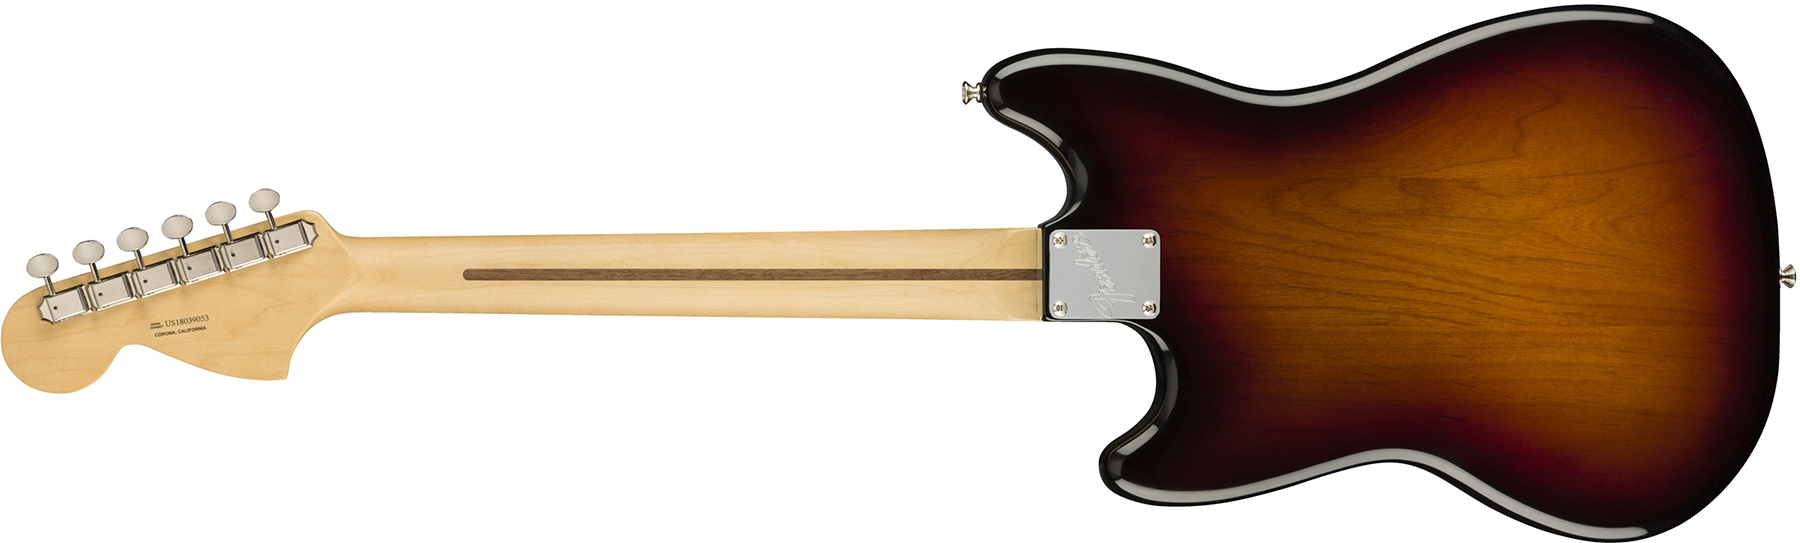 Fender Mustang American Performer Usa Ss Rw - 3-color Sunburst - Guitare Électrique Double Cut - Variation 1